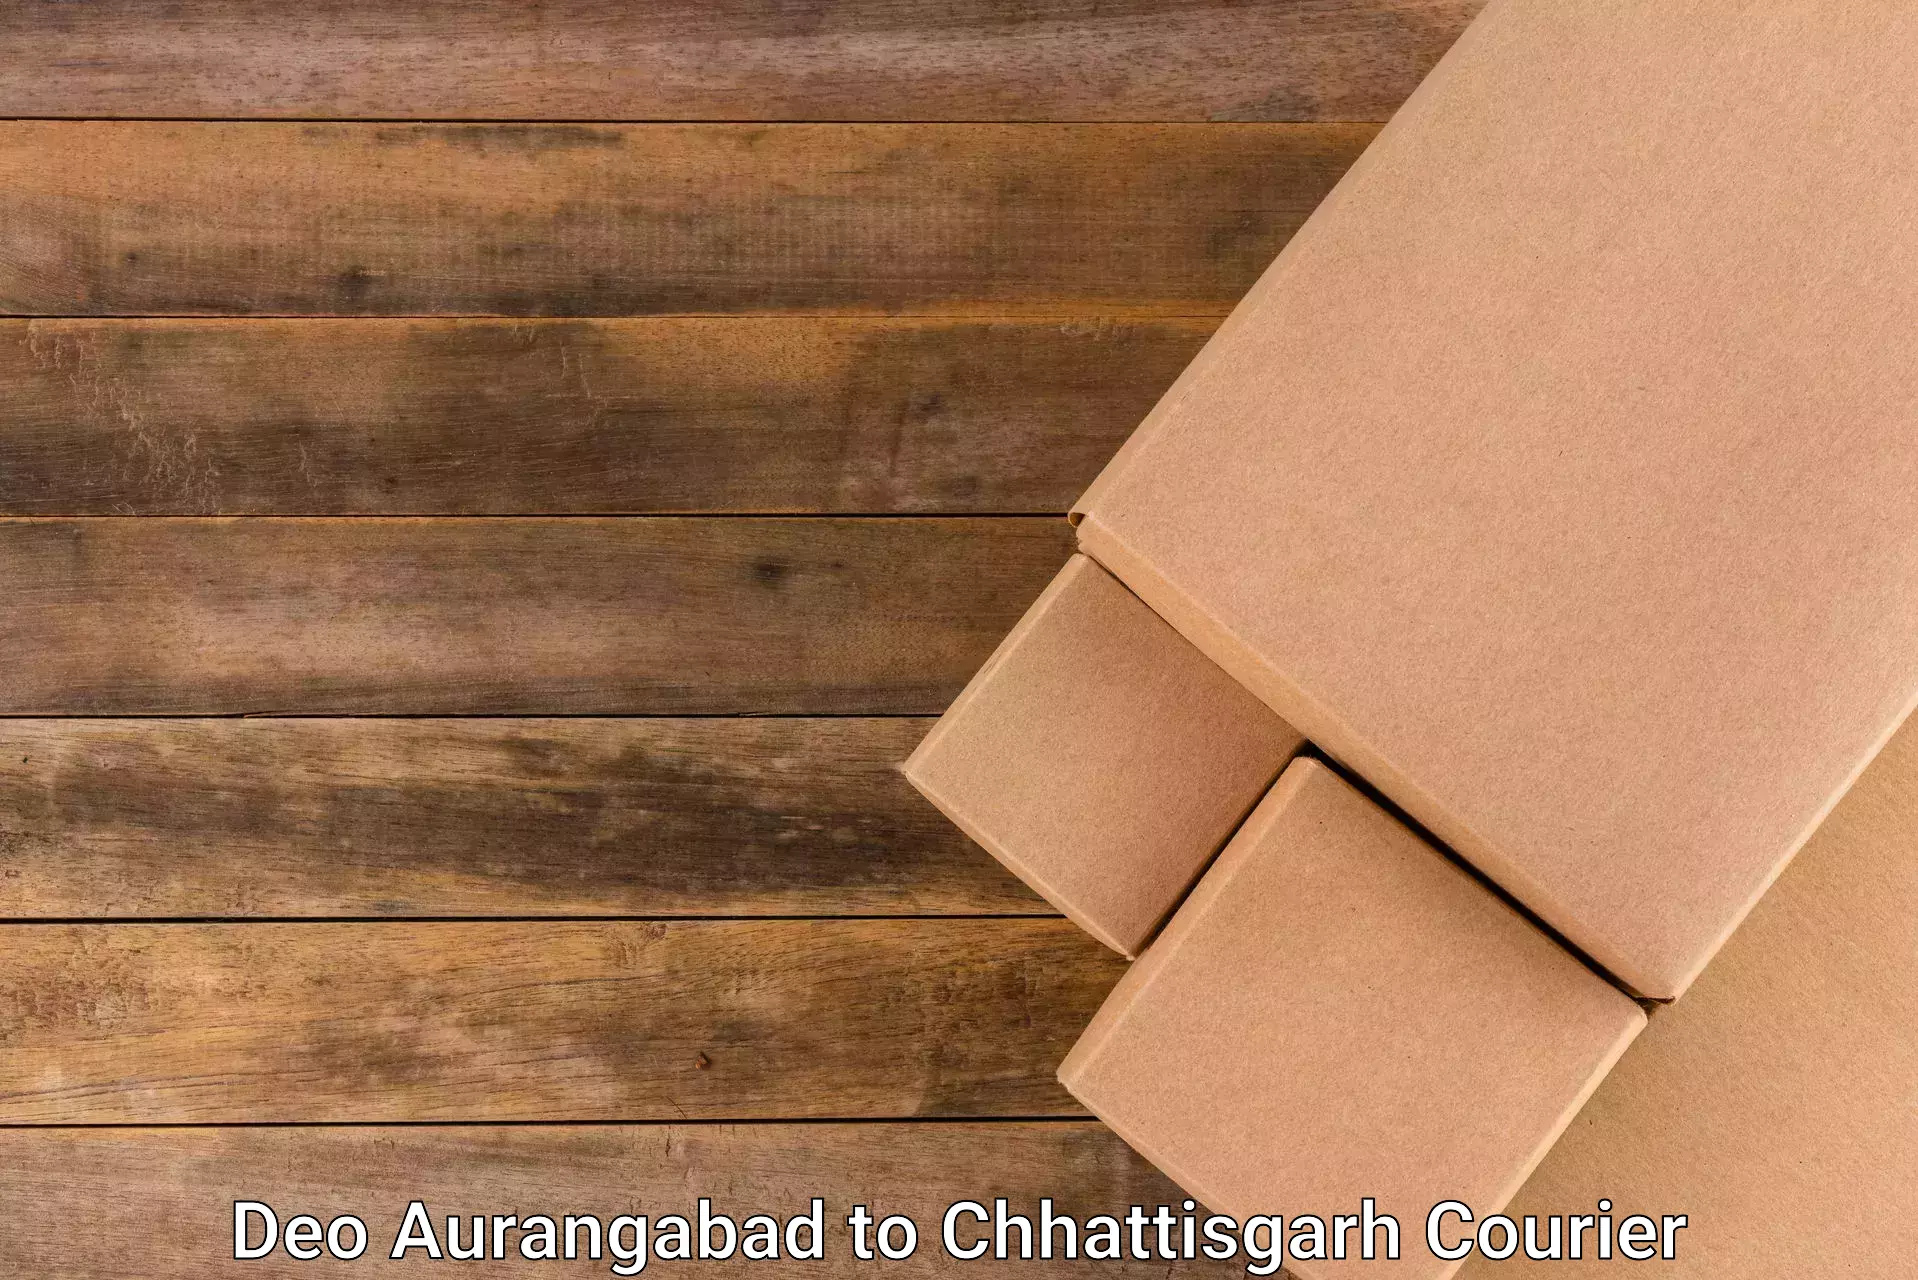 Parcel handling and care Deo Aurangabad to Tilda